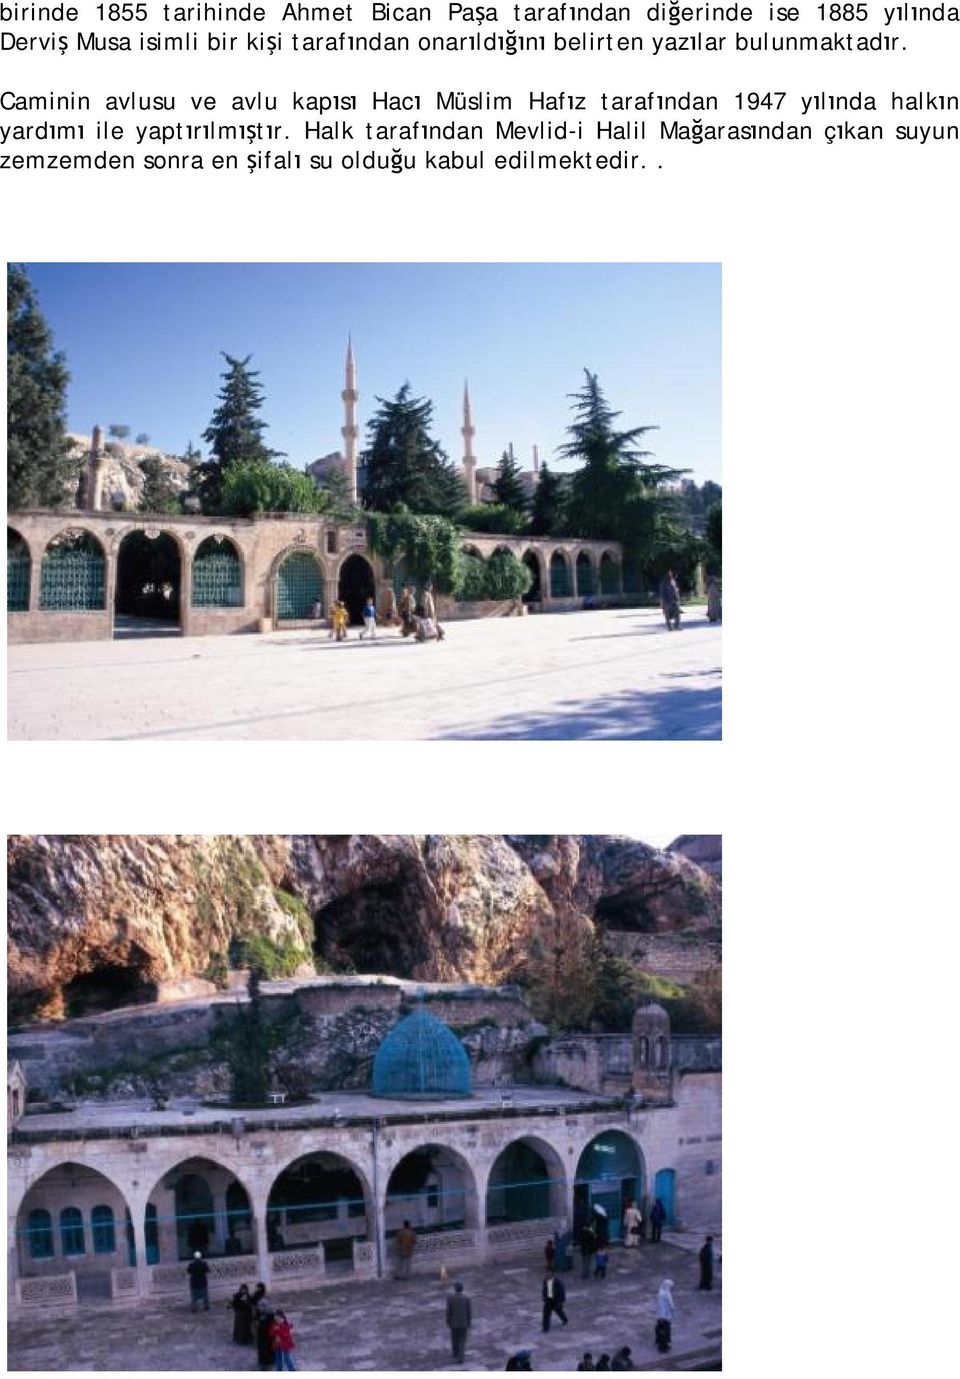 Caminin avlusu ve avlu kapısı Hacı Müslim Hafız tarafından 1947 yılında halkın yardımı ile